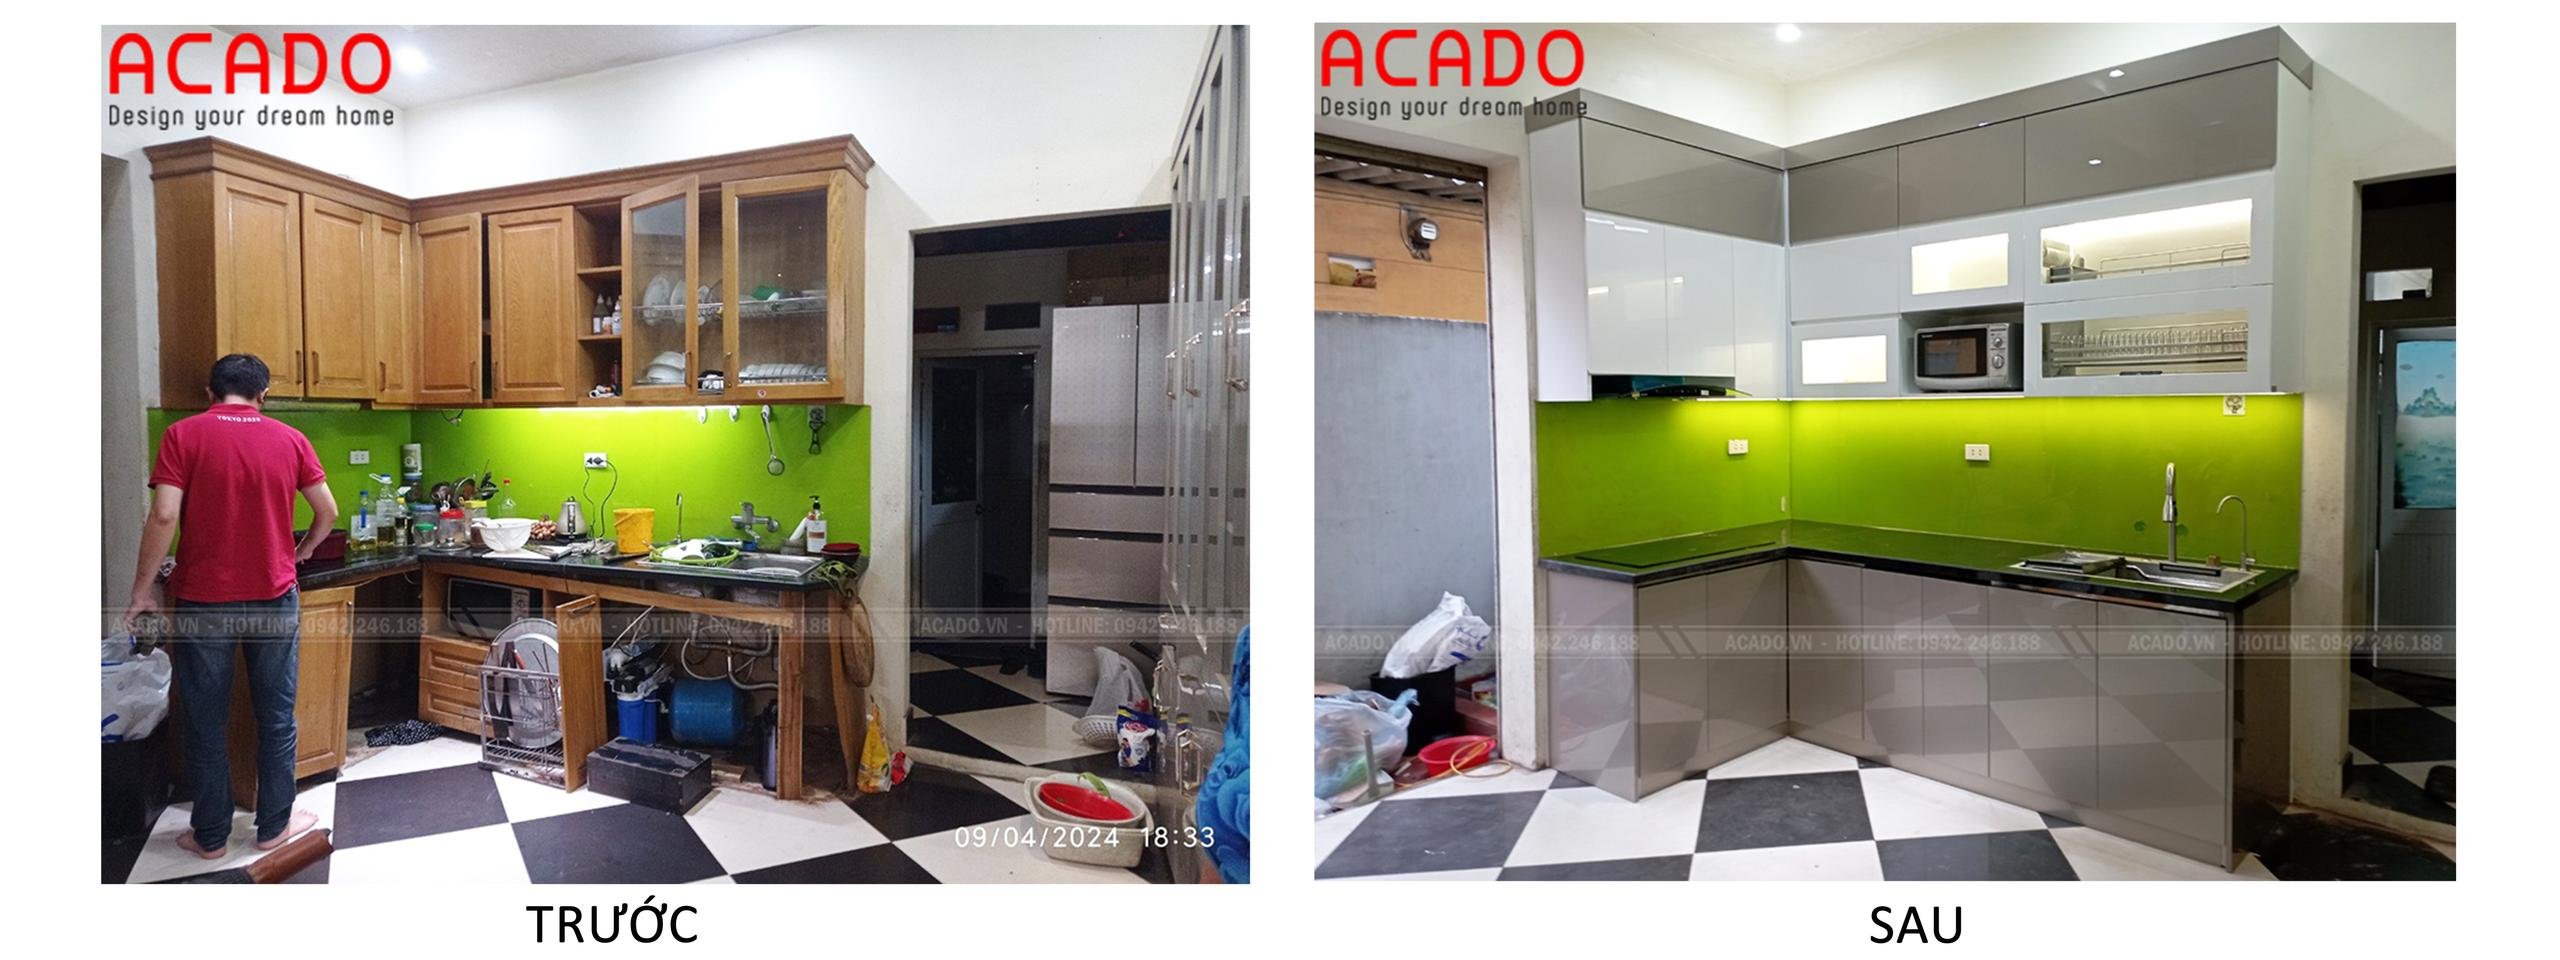 Hình ảnh trước và sau khi hoạn thiện tủ bếp - Nội thất ACADO